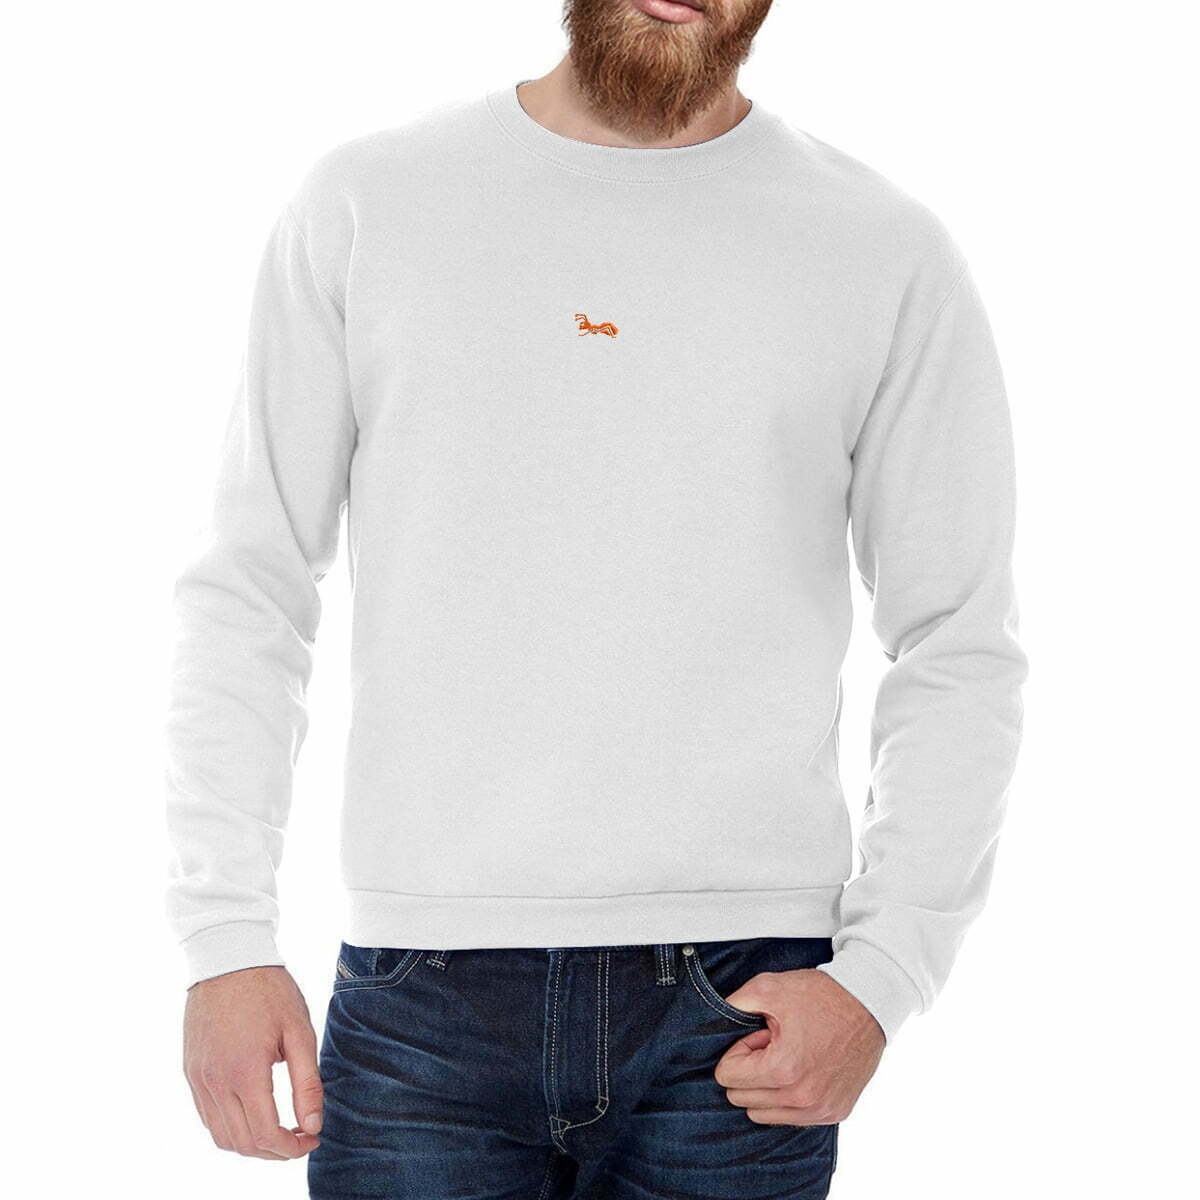 Sweatshirt mit Rundhalsausschnitt. Herren Pullover Sweatshirt mit Ihrem Logo oder Namen bestellen.